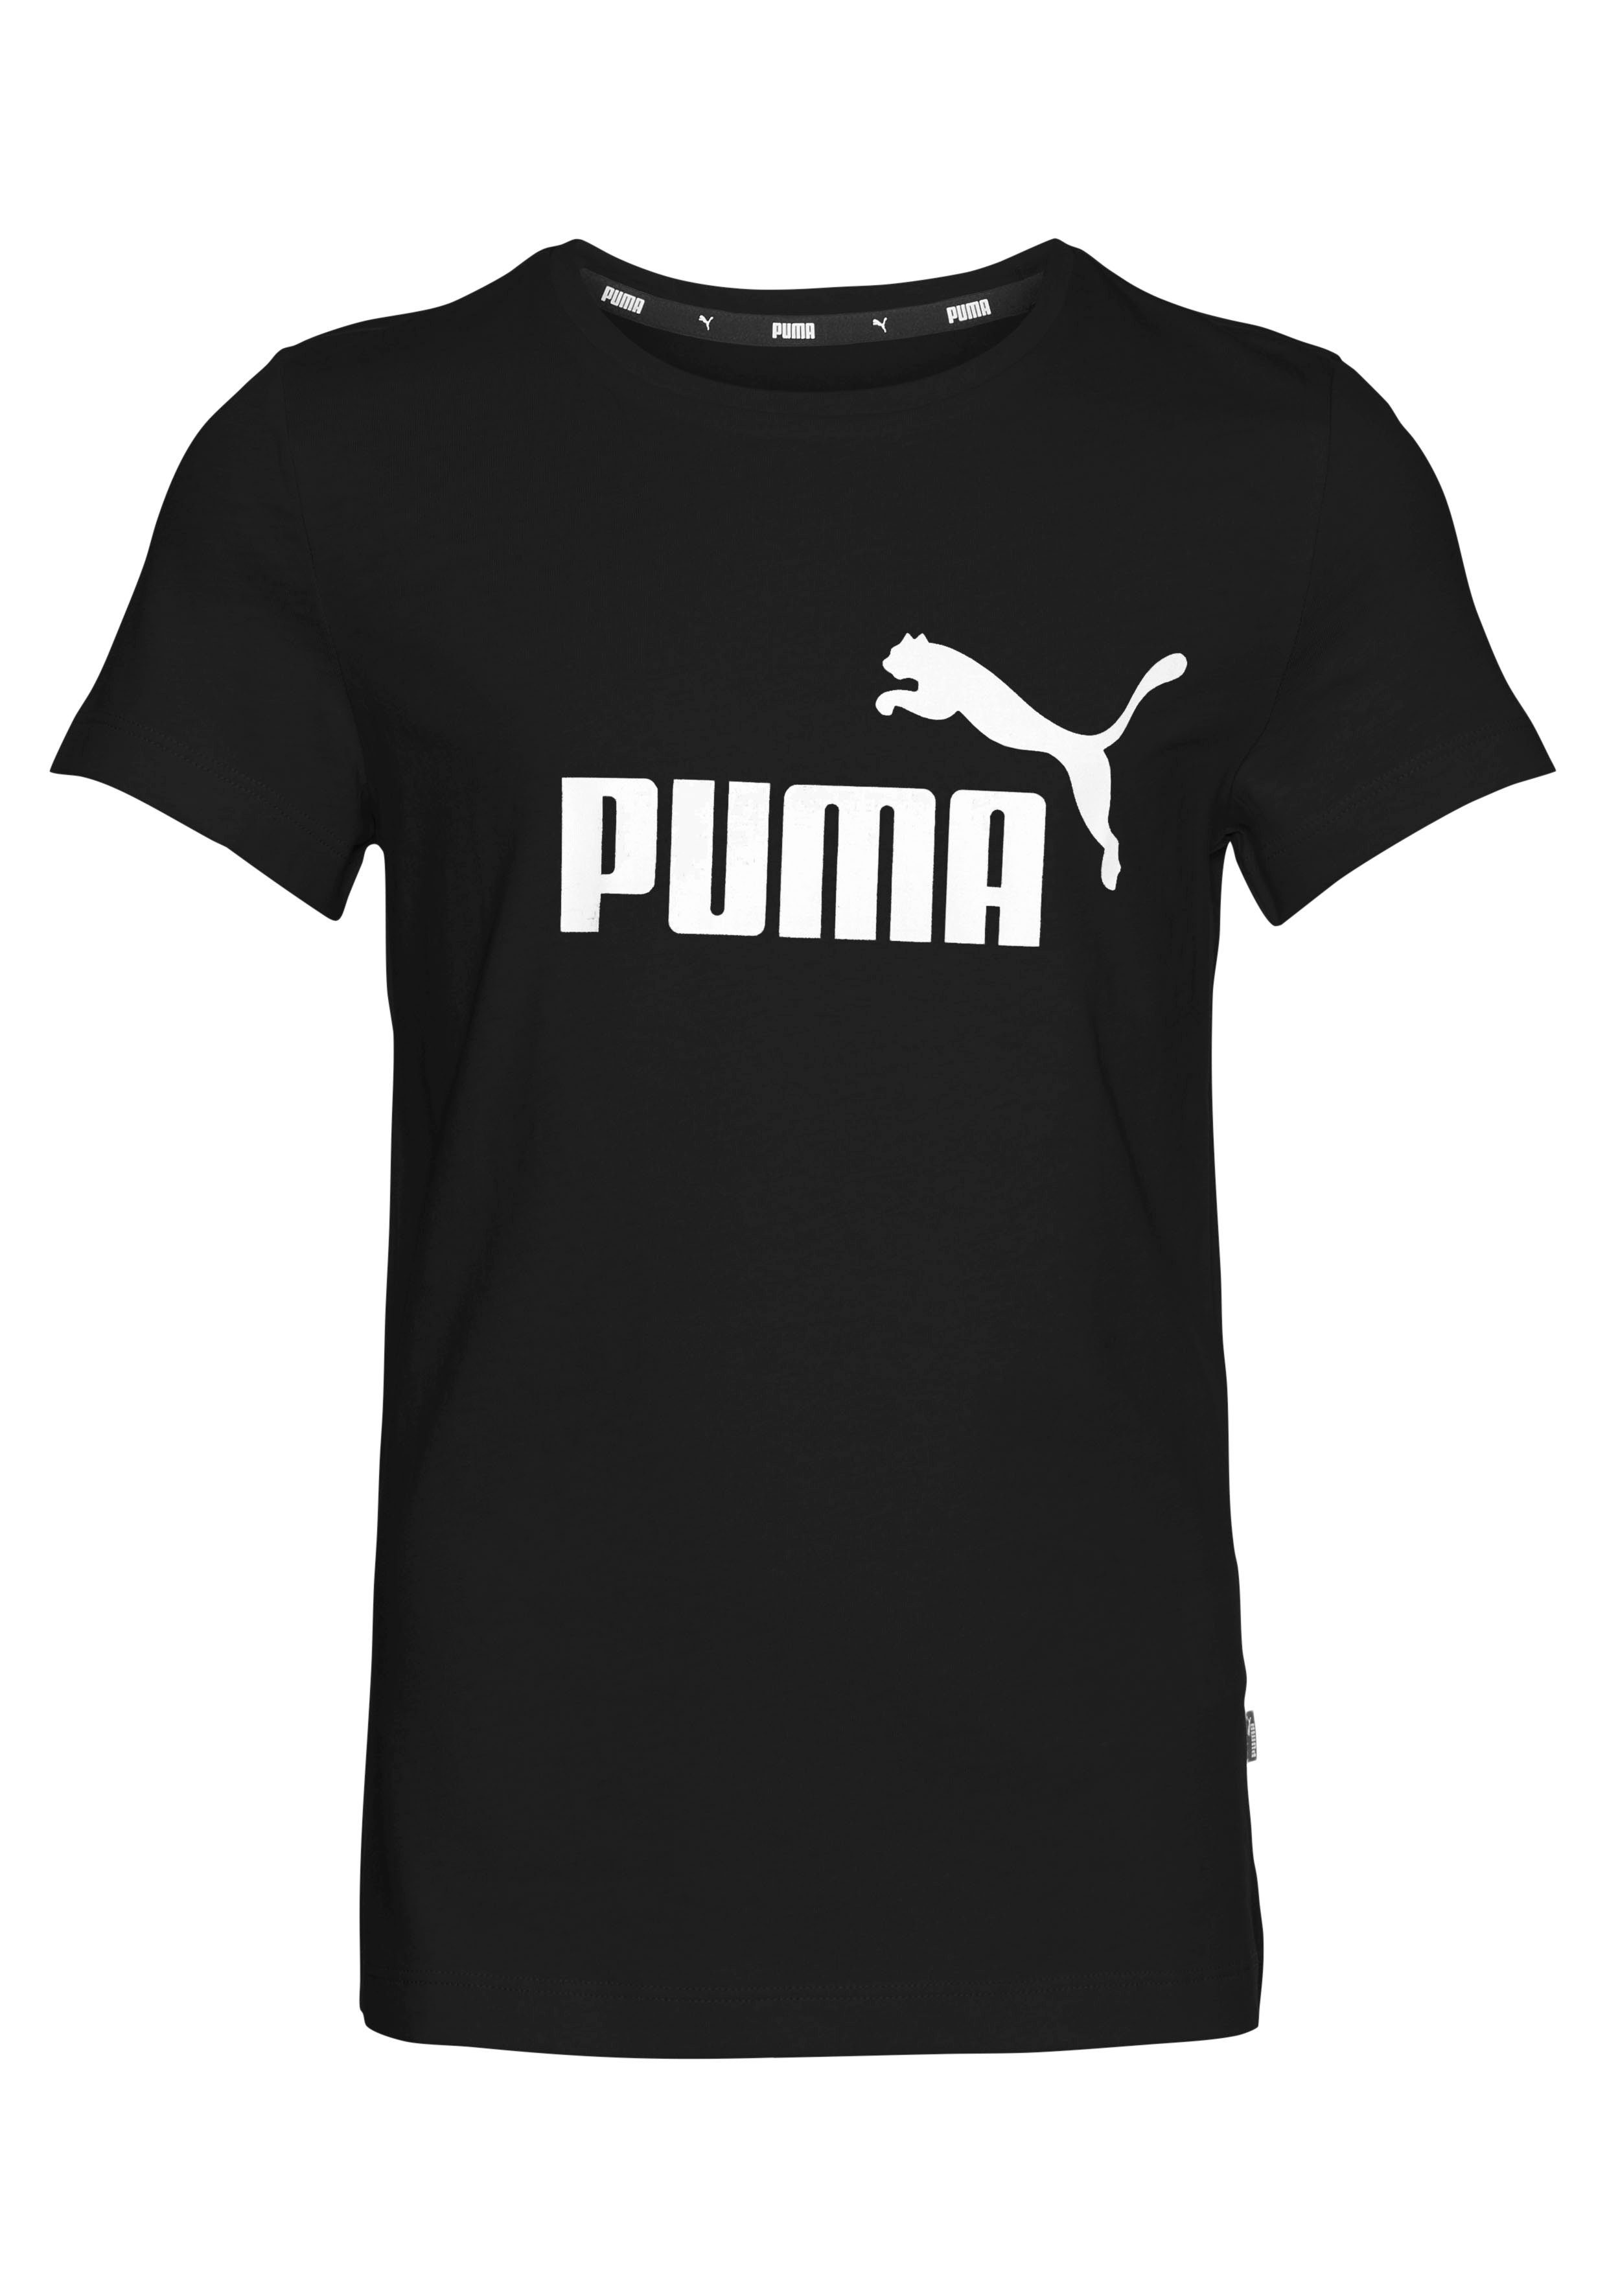 PUMA T-Shirt LOGO Black TEE Puma G ESS